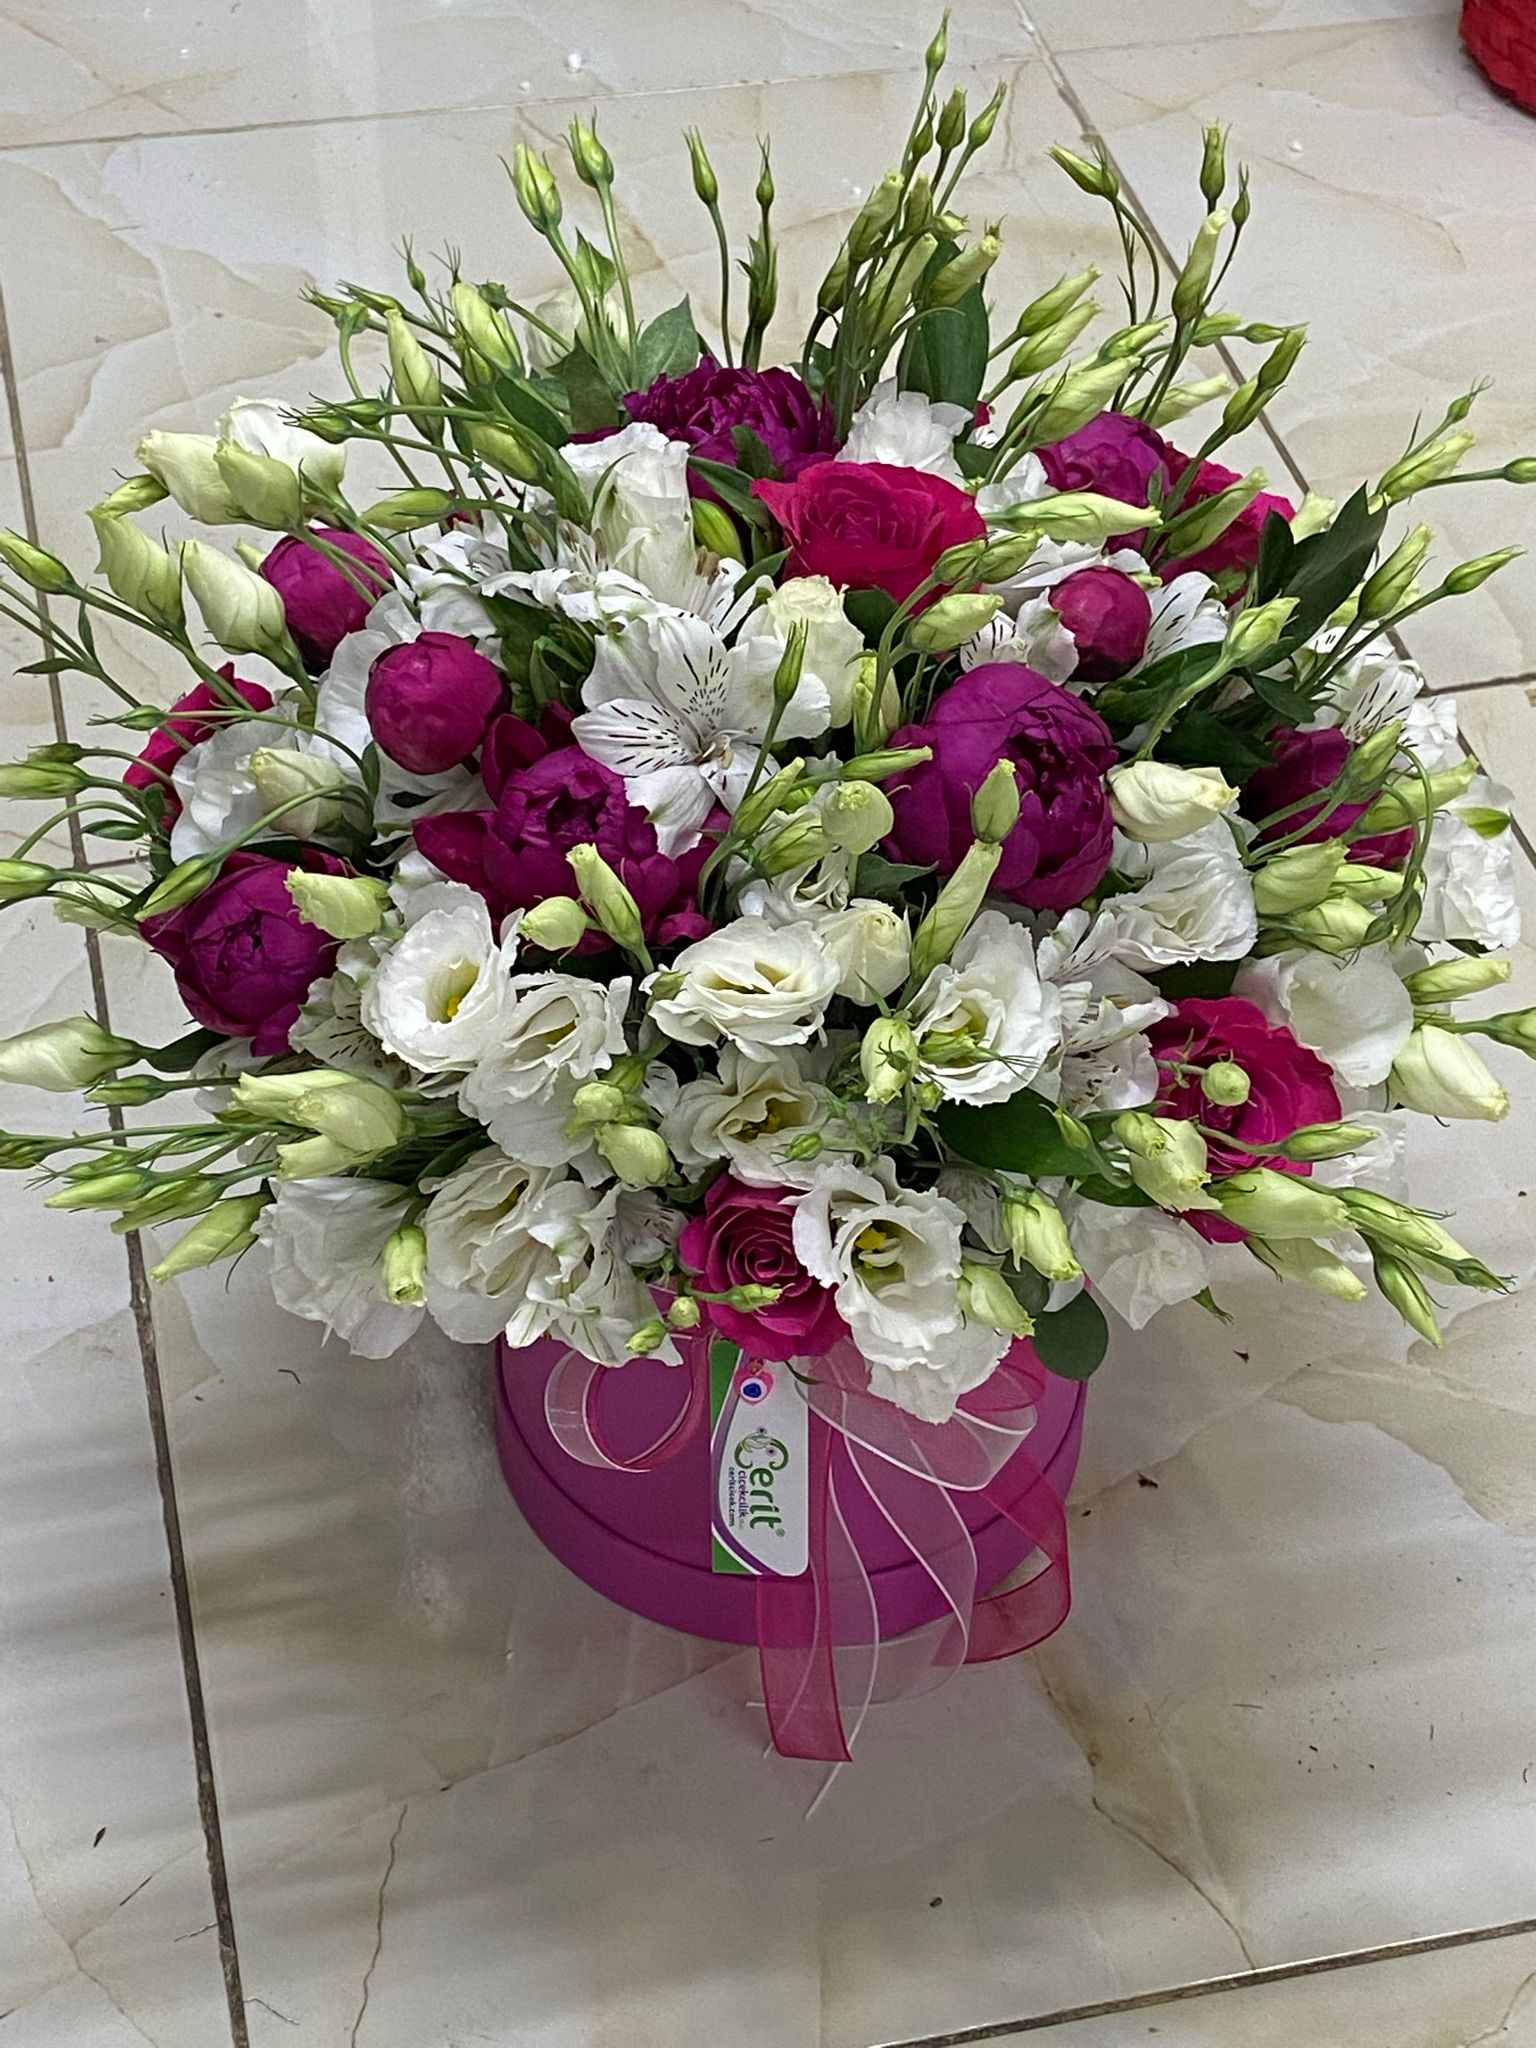  Antalya Blumenlieferung Pion Astomaria Lisyantus Rose in einer Schachtel